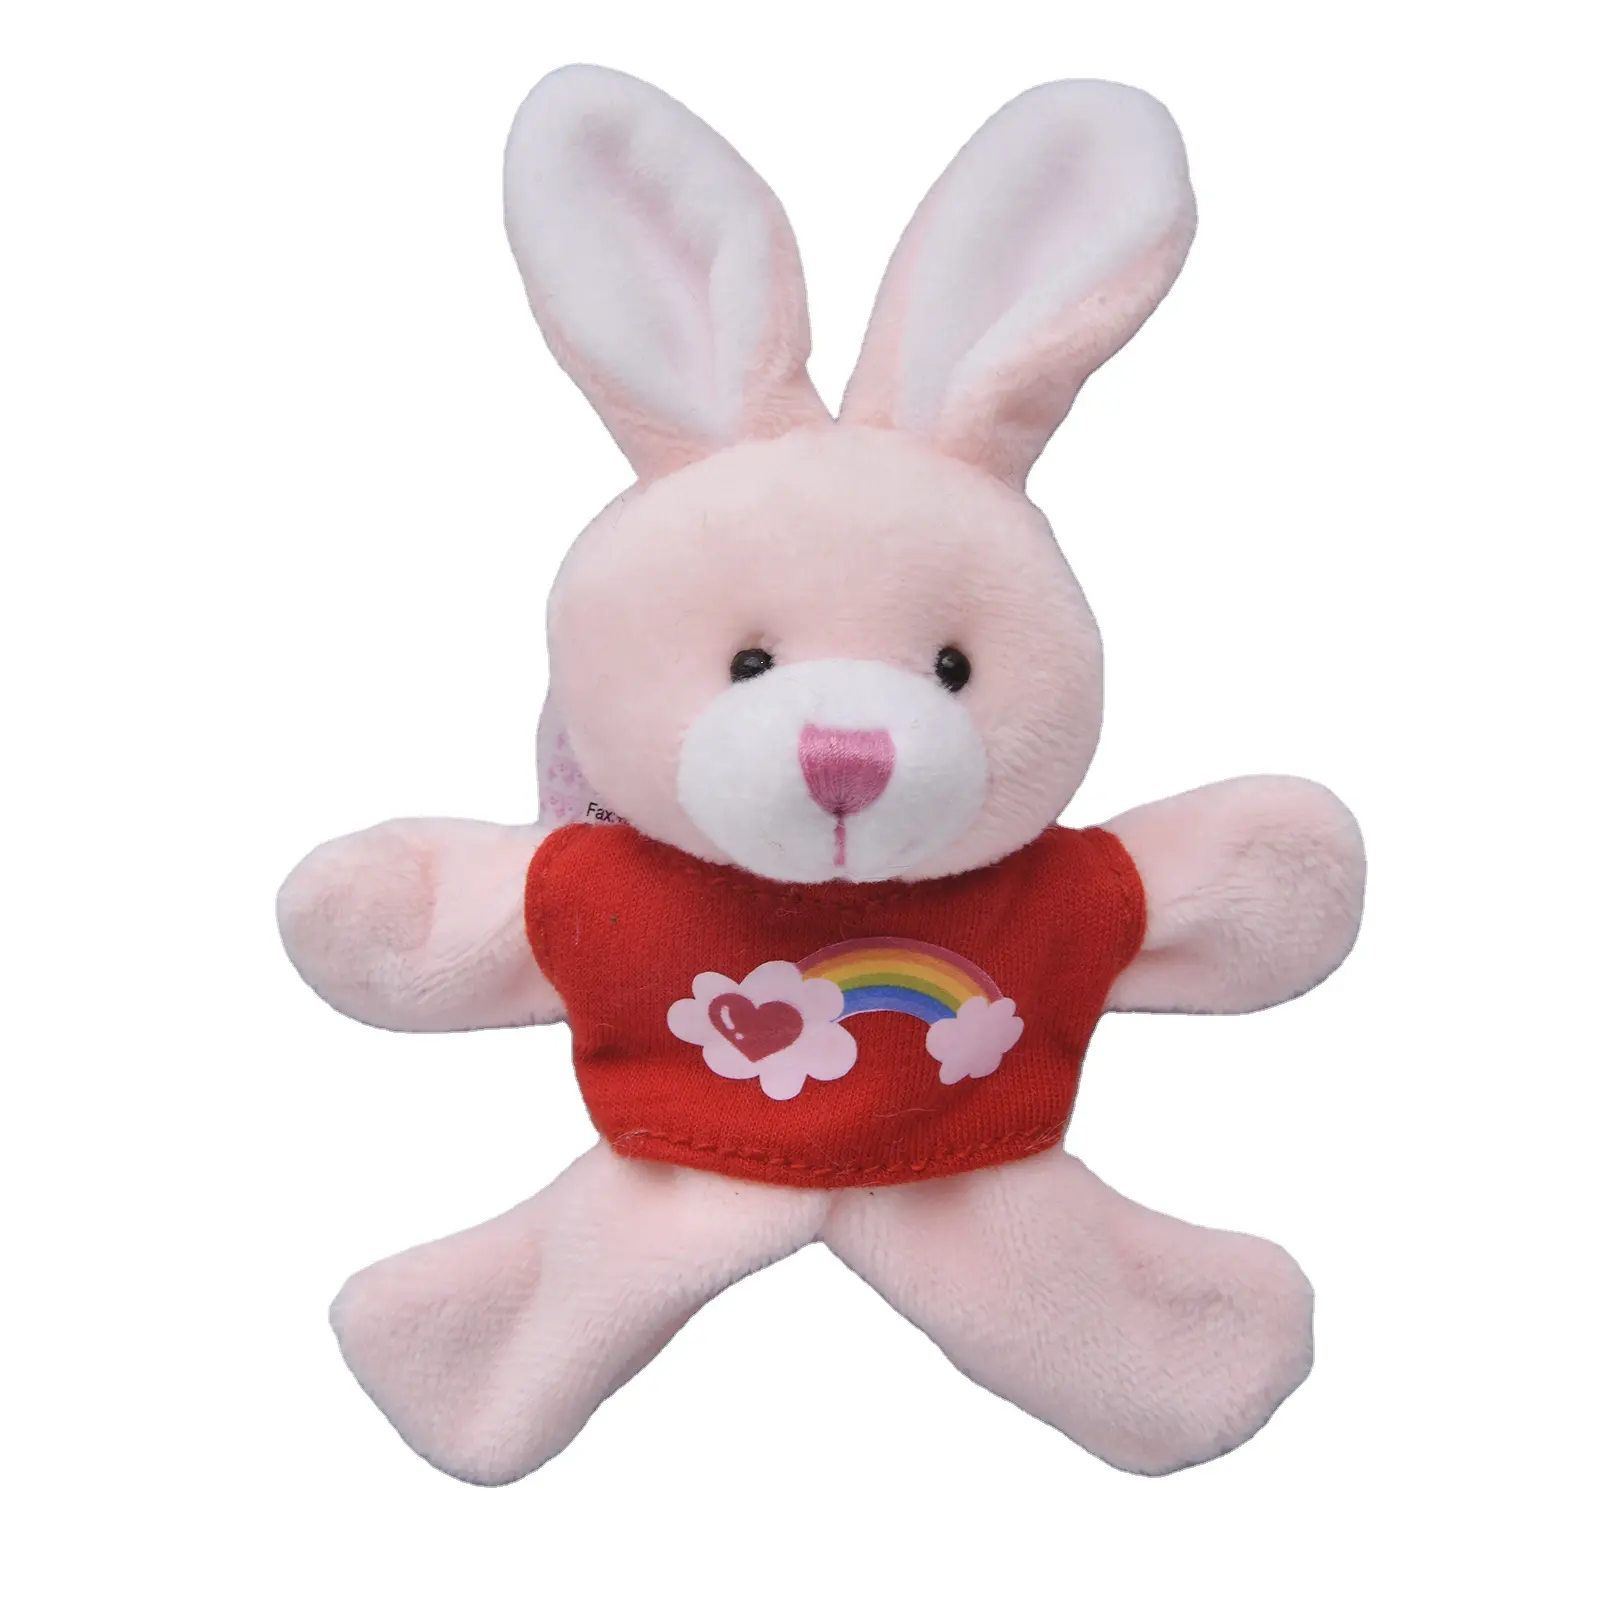 OEM ODM कस्टम बनी खिलौना कस्टम आलीशान लंबे कान खरगोश चुंबक के साथ भरवां खिलौना बच्चों के खिलौने पशु फ्रिज